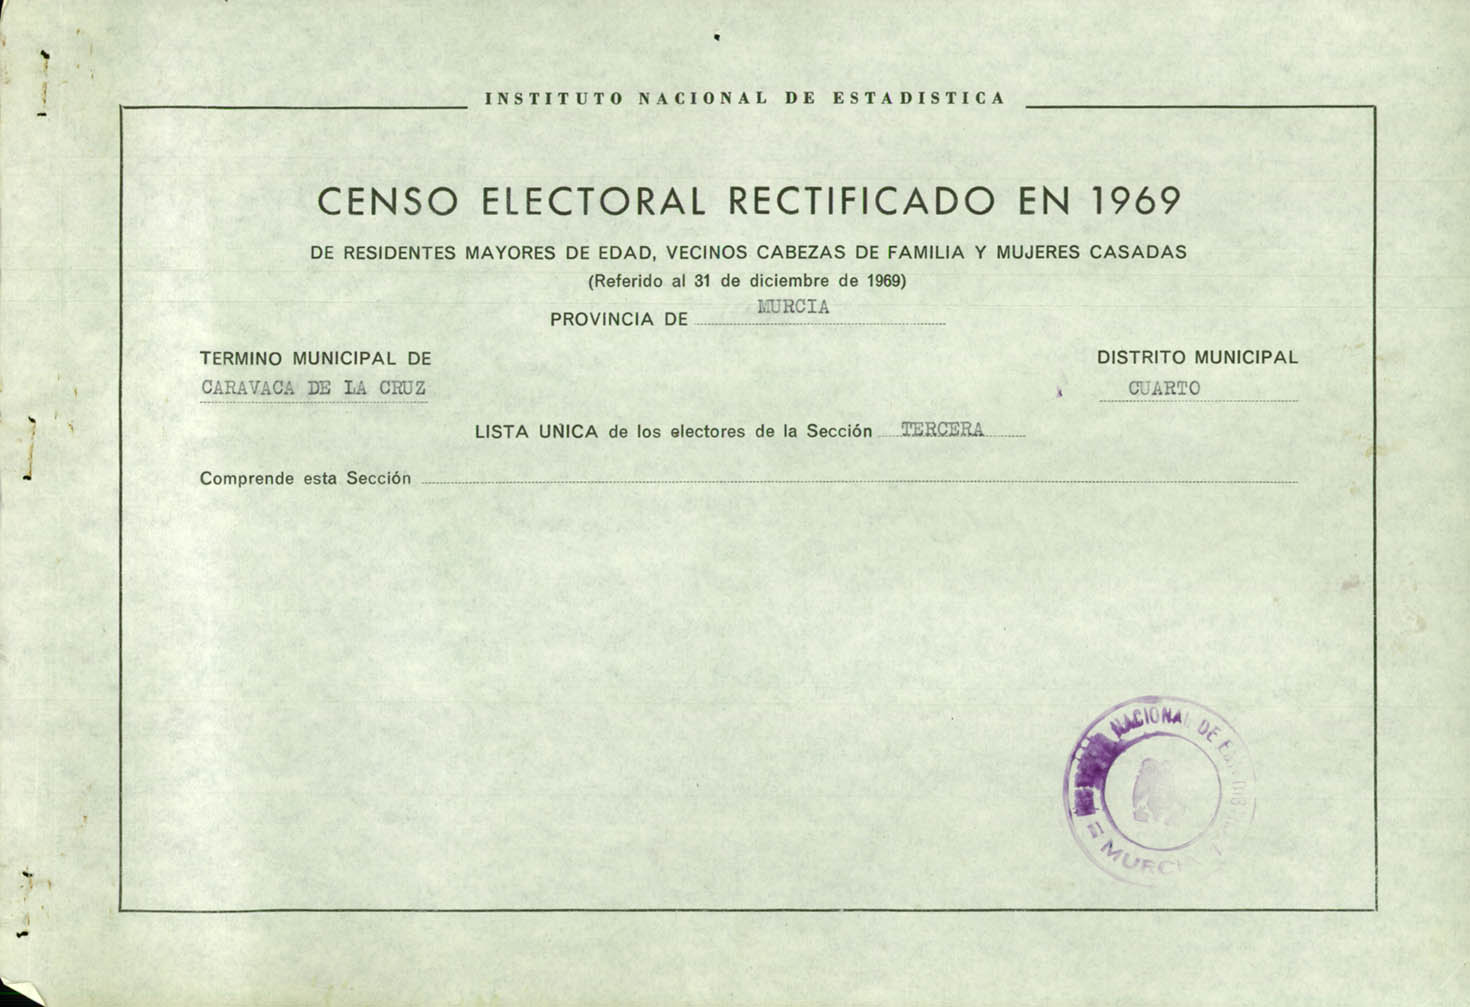 Censo electoral rectificado en 1969: listas definitivas de Caravaca de la Cruz, Distrito 4º, sección 3º (Singla, Navares y Caneja).